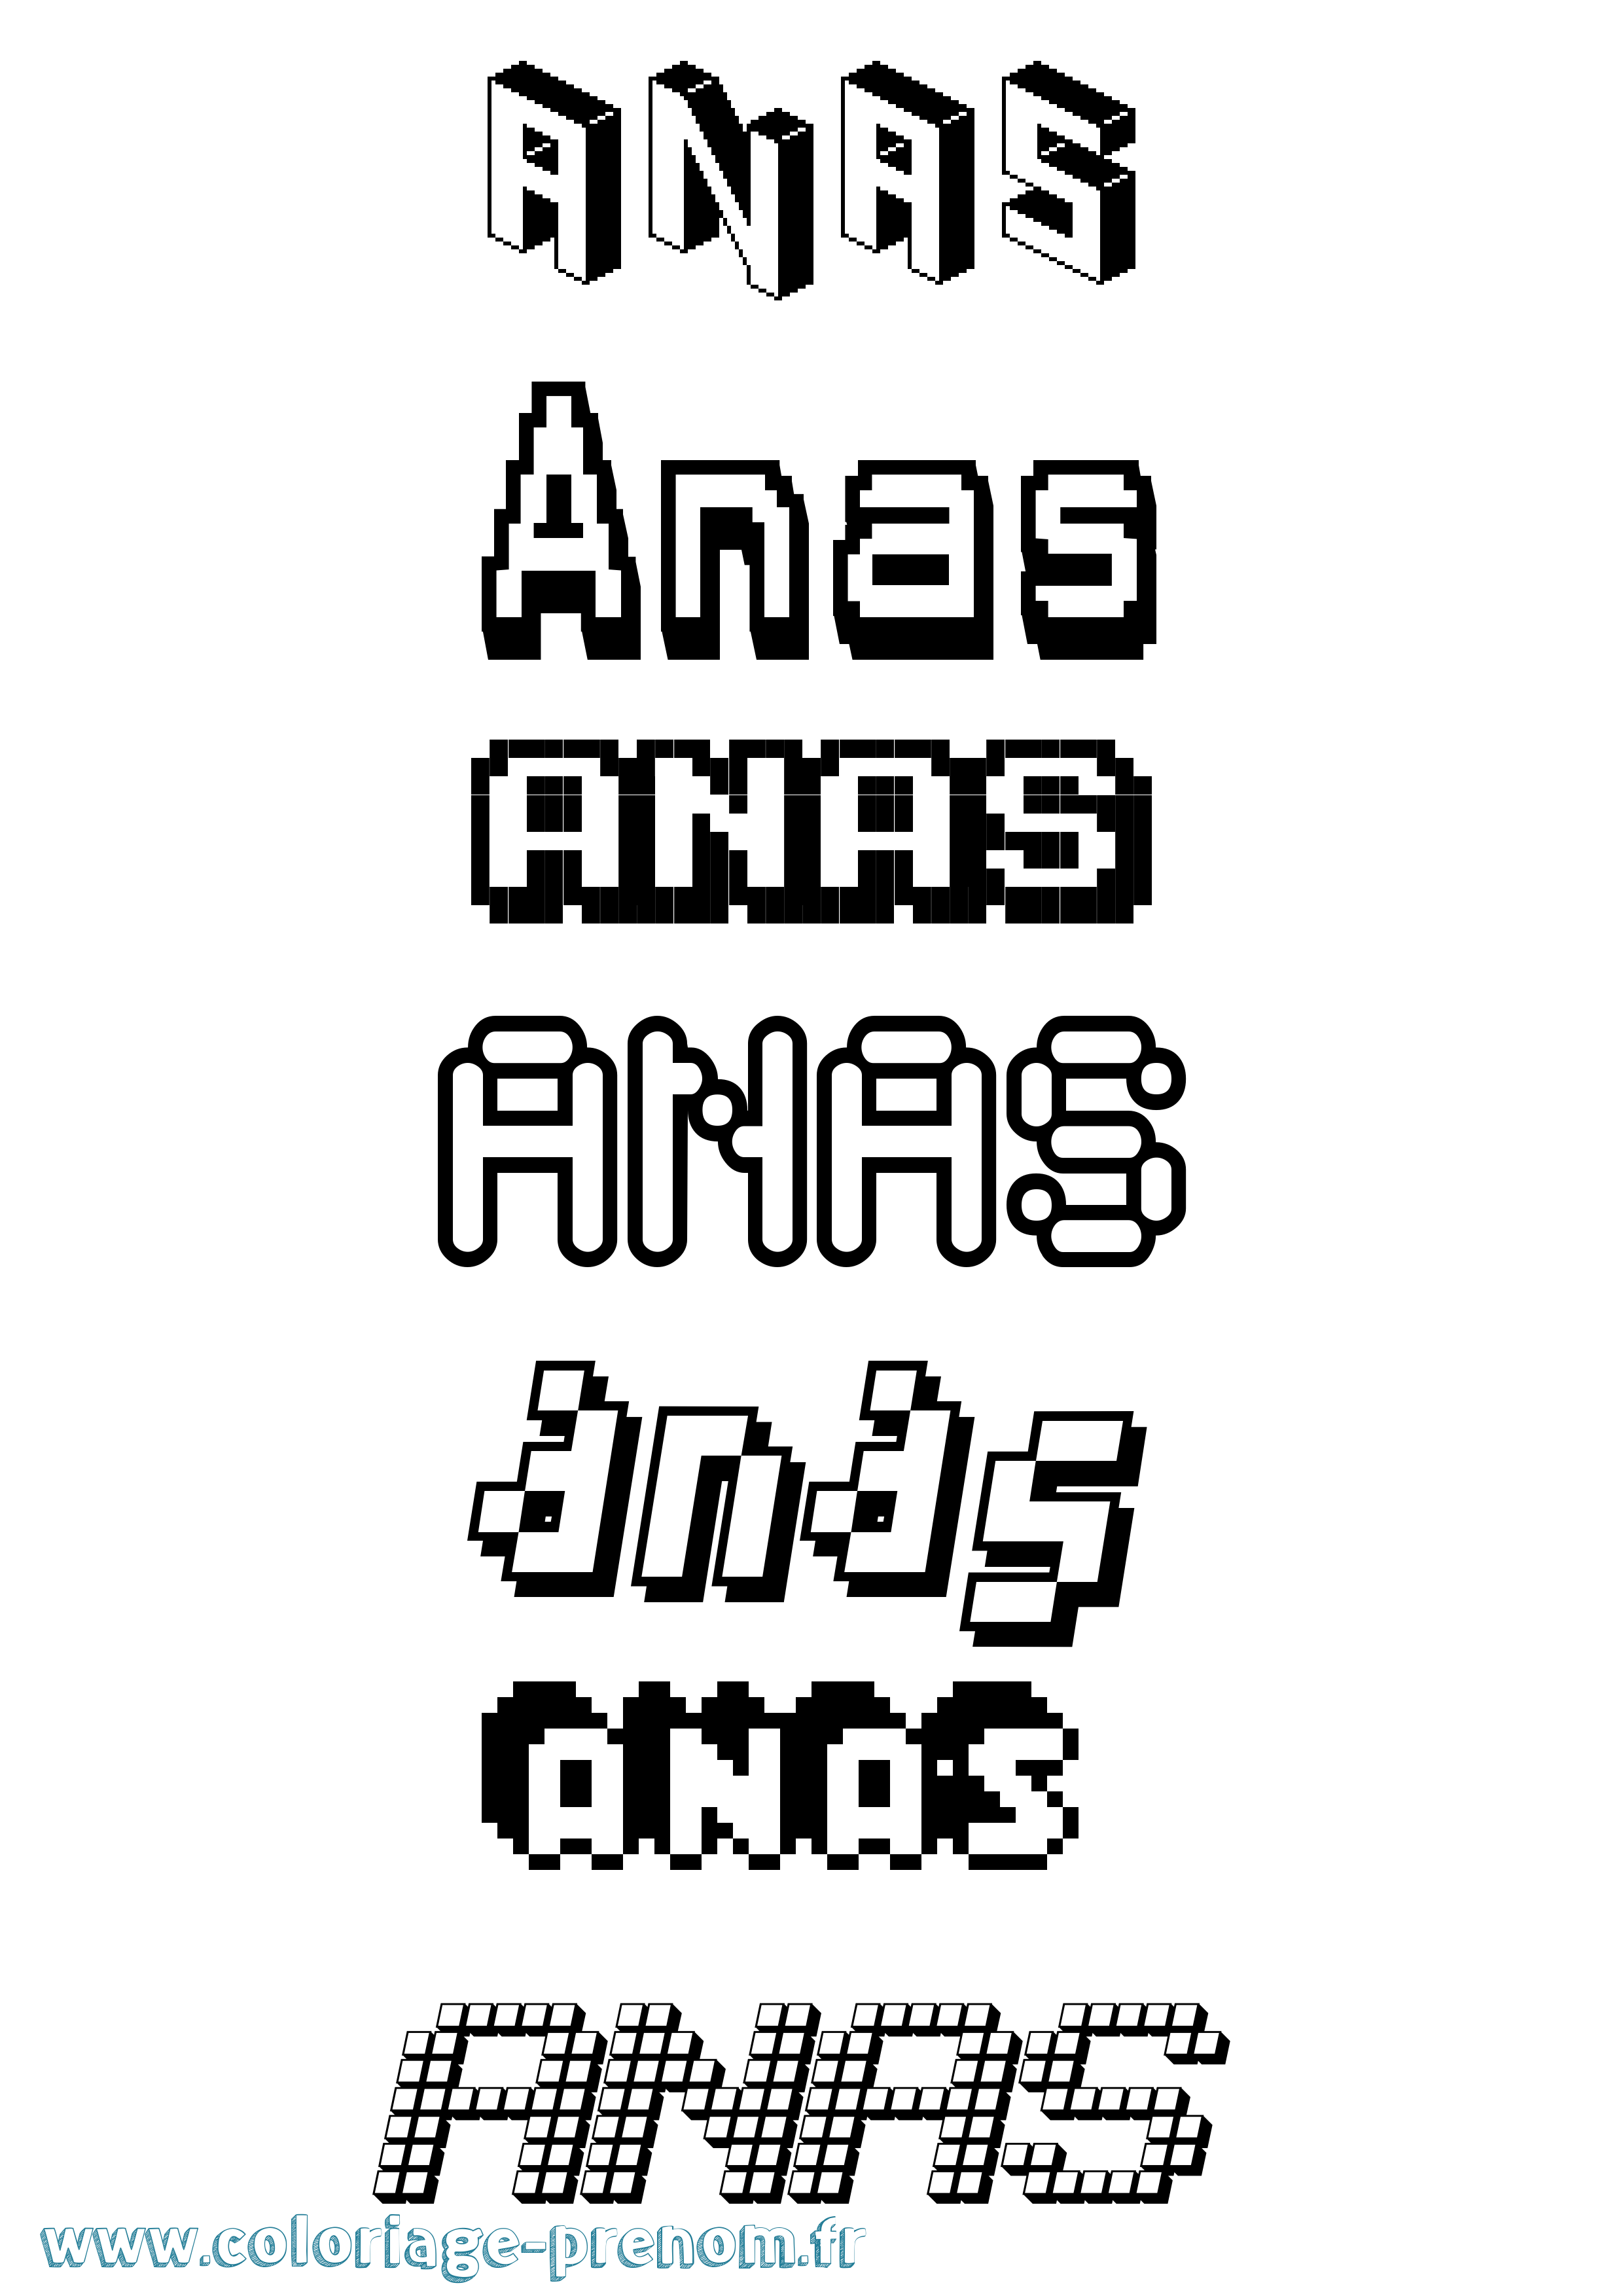 Coloriage prénom Anas